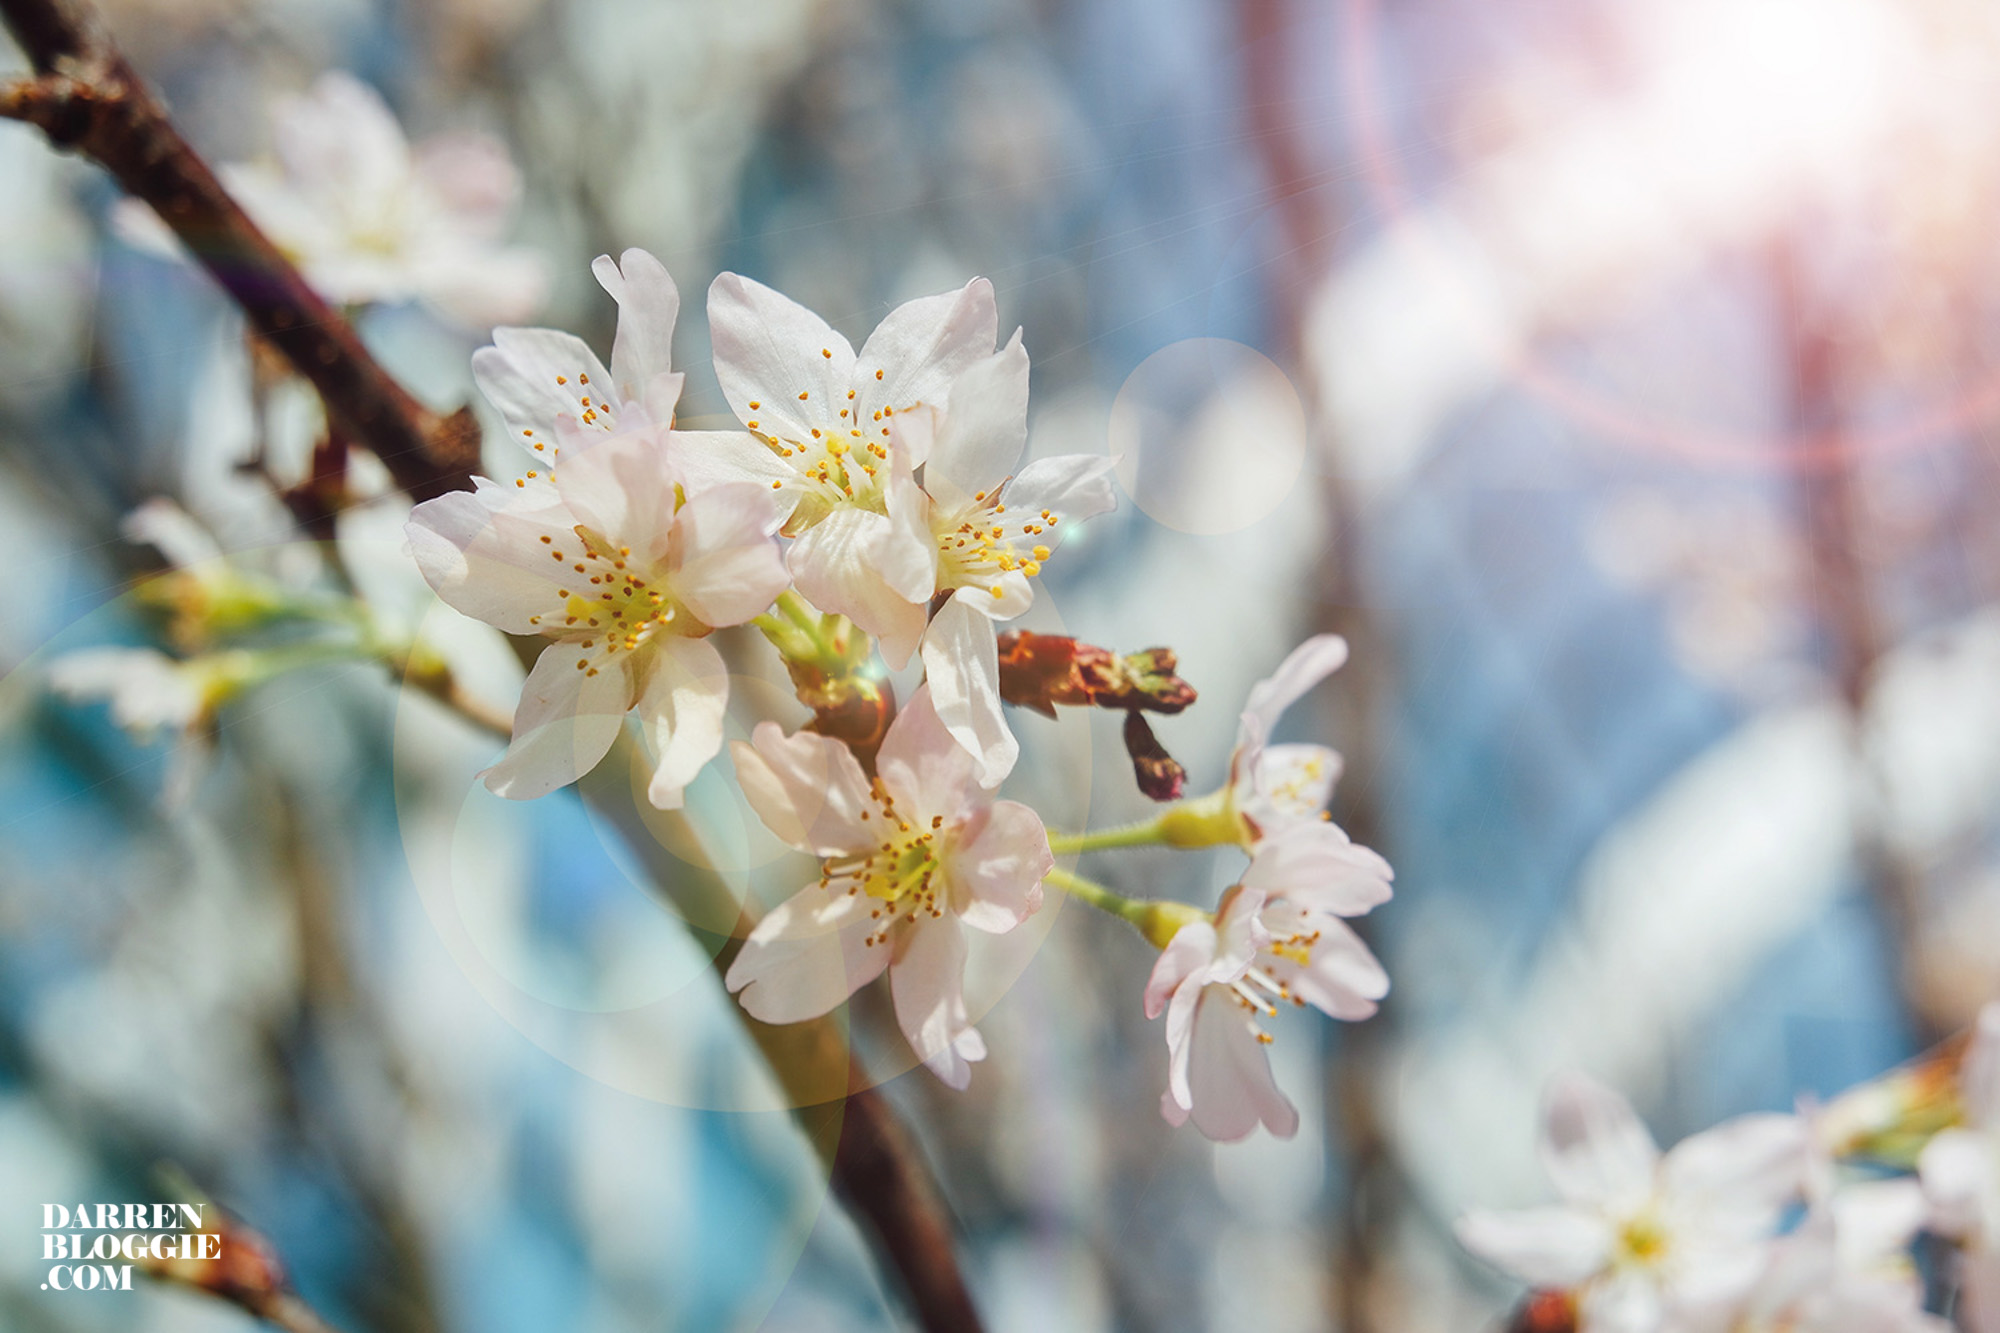 Blossom-beats-sakura-cherry-gardensbythebay